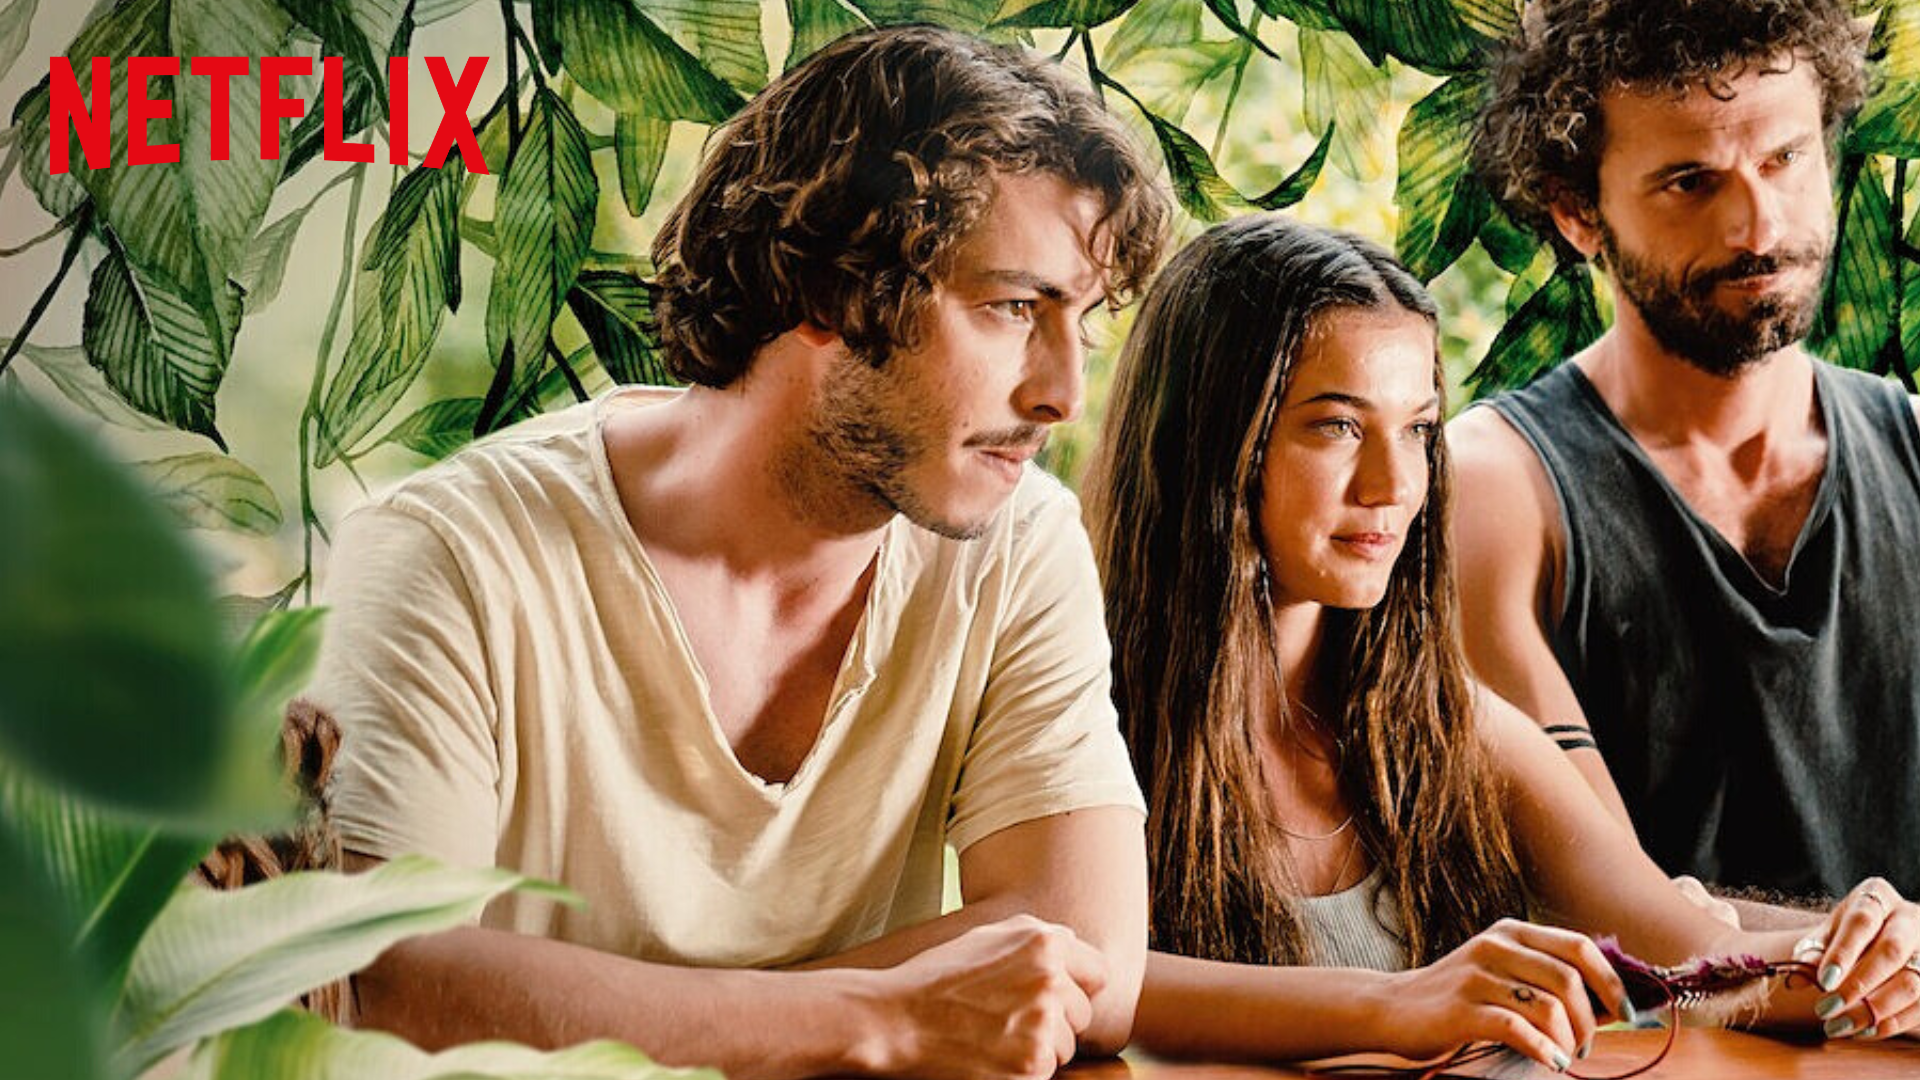 Le Cataclysme de l'amour sur Netflix : c'est quoi ce film romantique turc avec Pinar Deniz ?